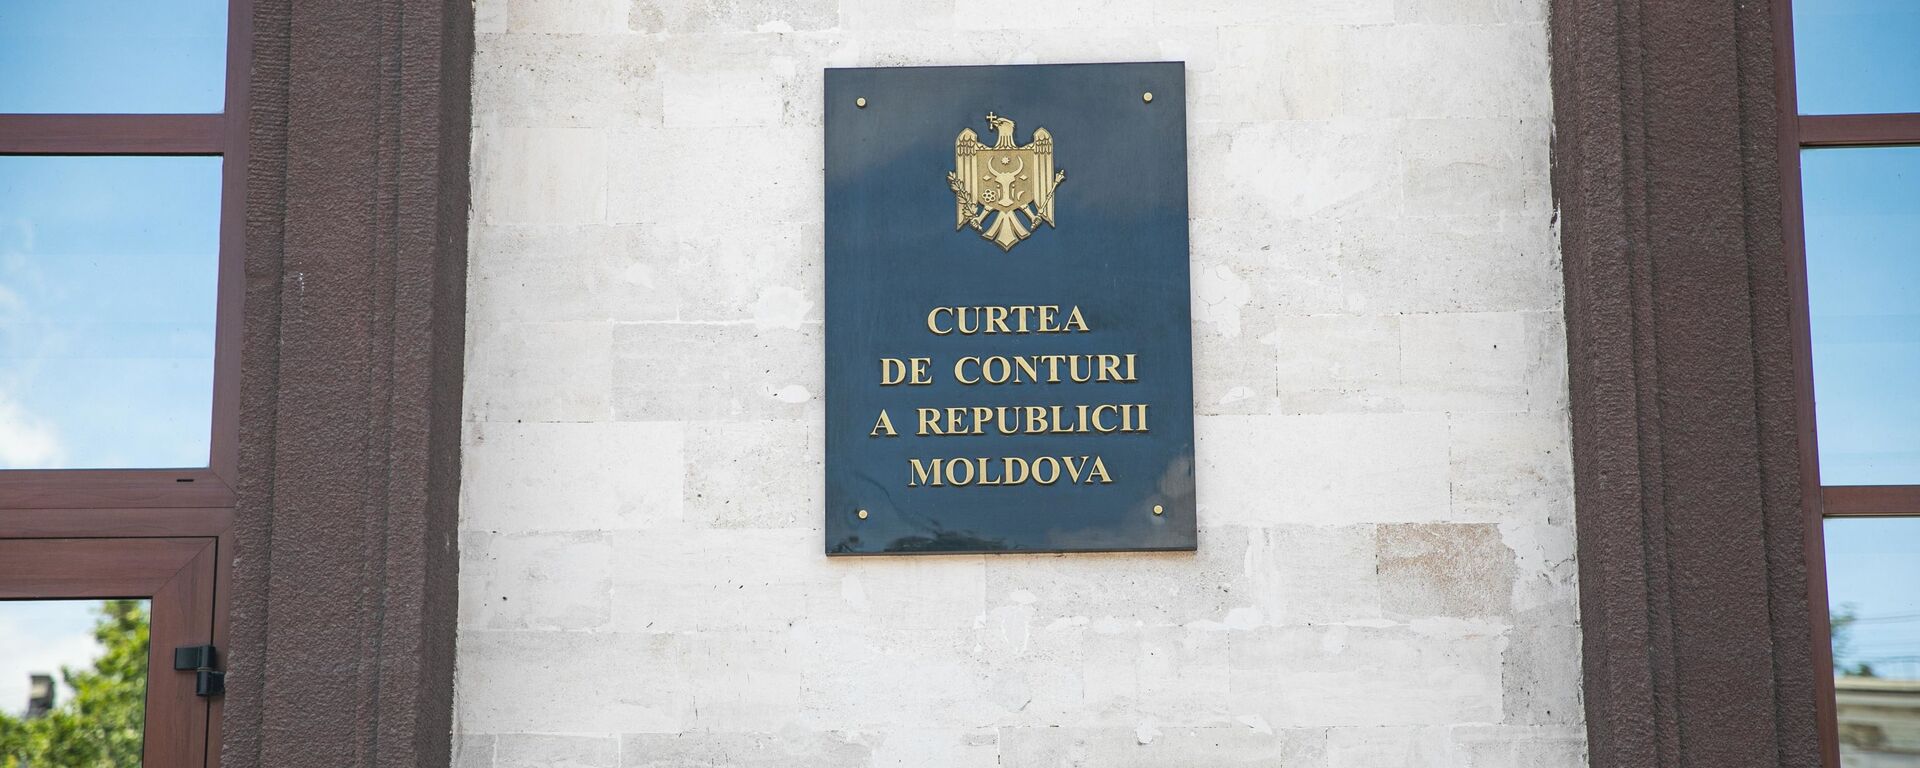 Curtea de conturi a Republicii Moldova - Sputnik Moldova, 1920, 15.07.2021